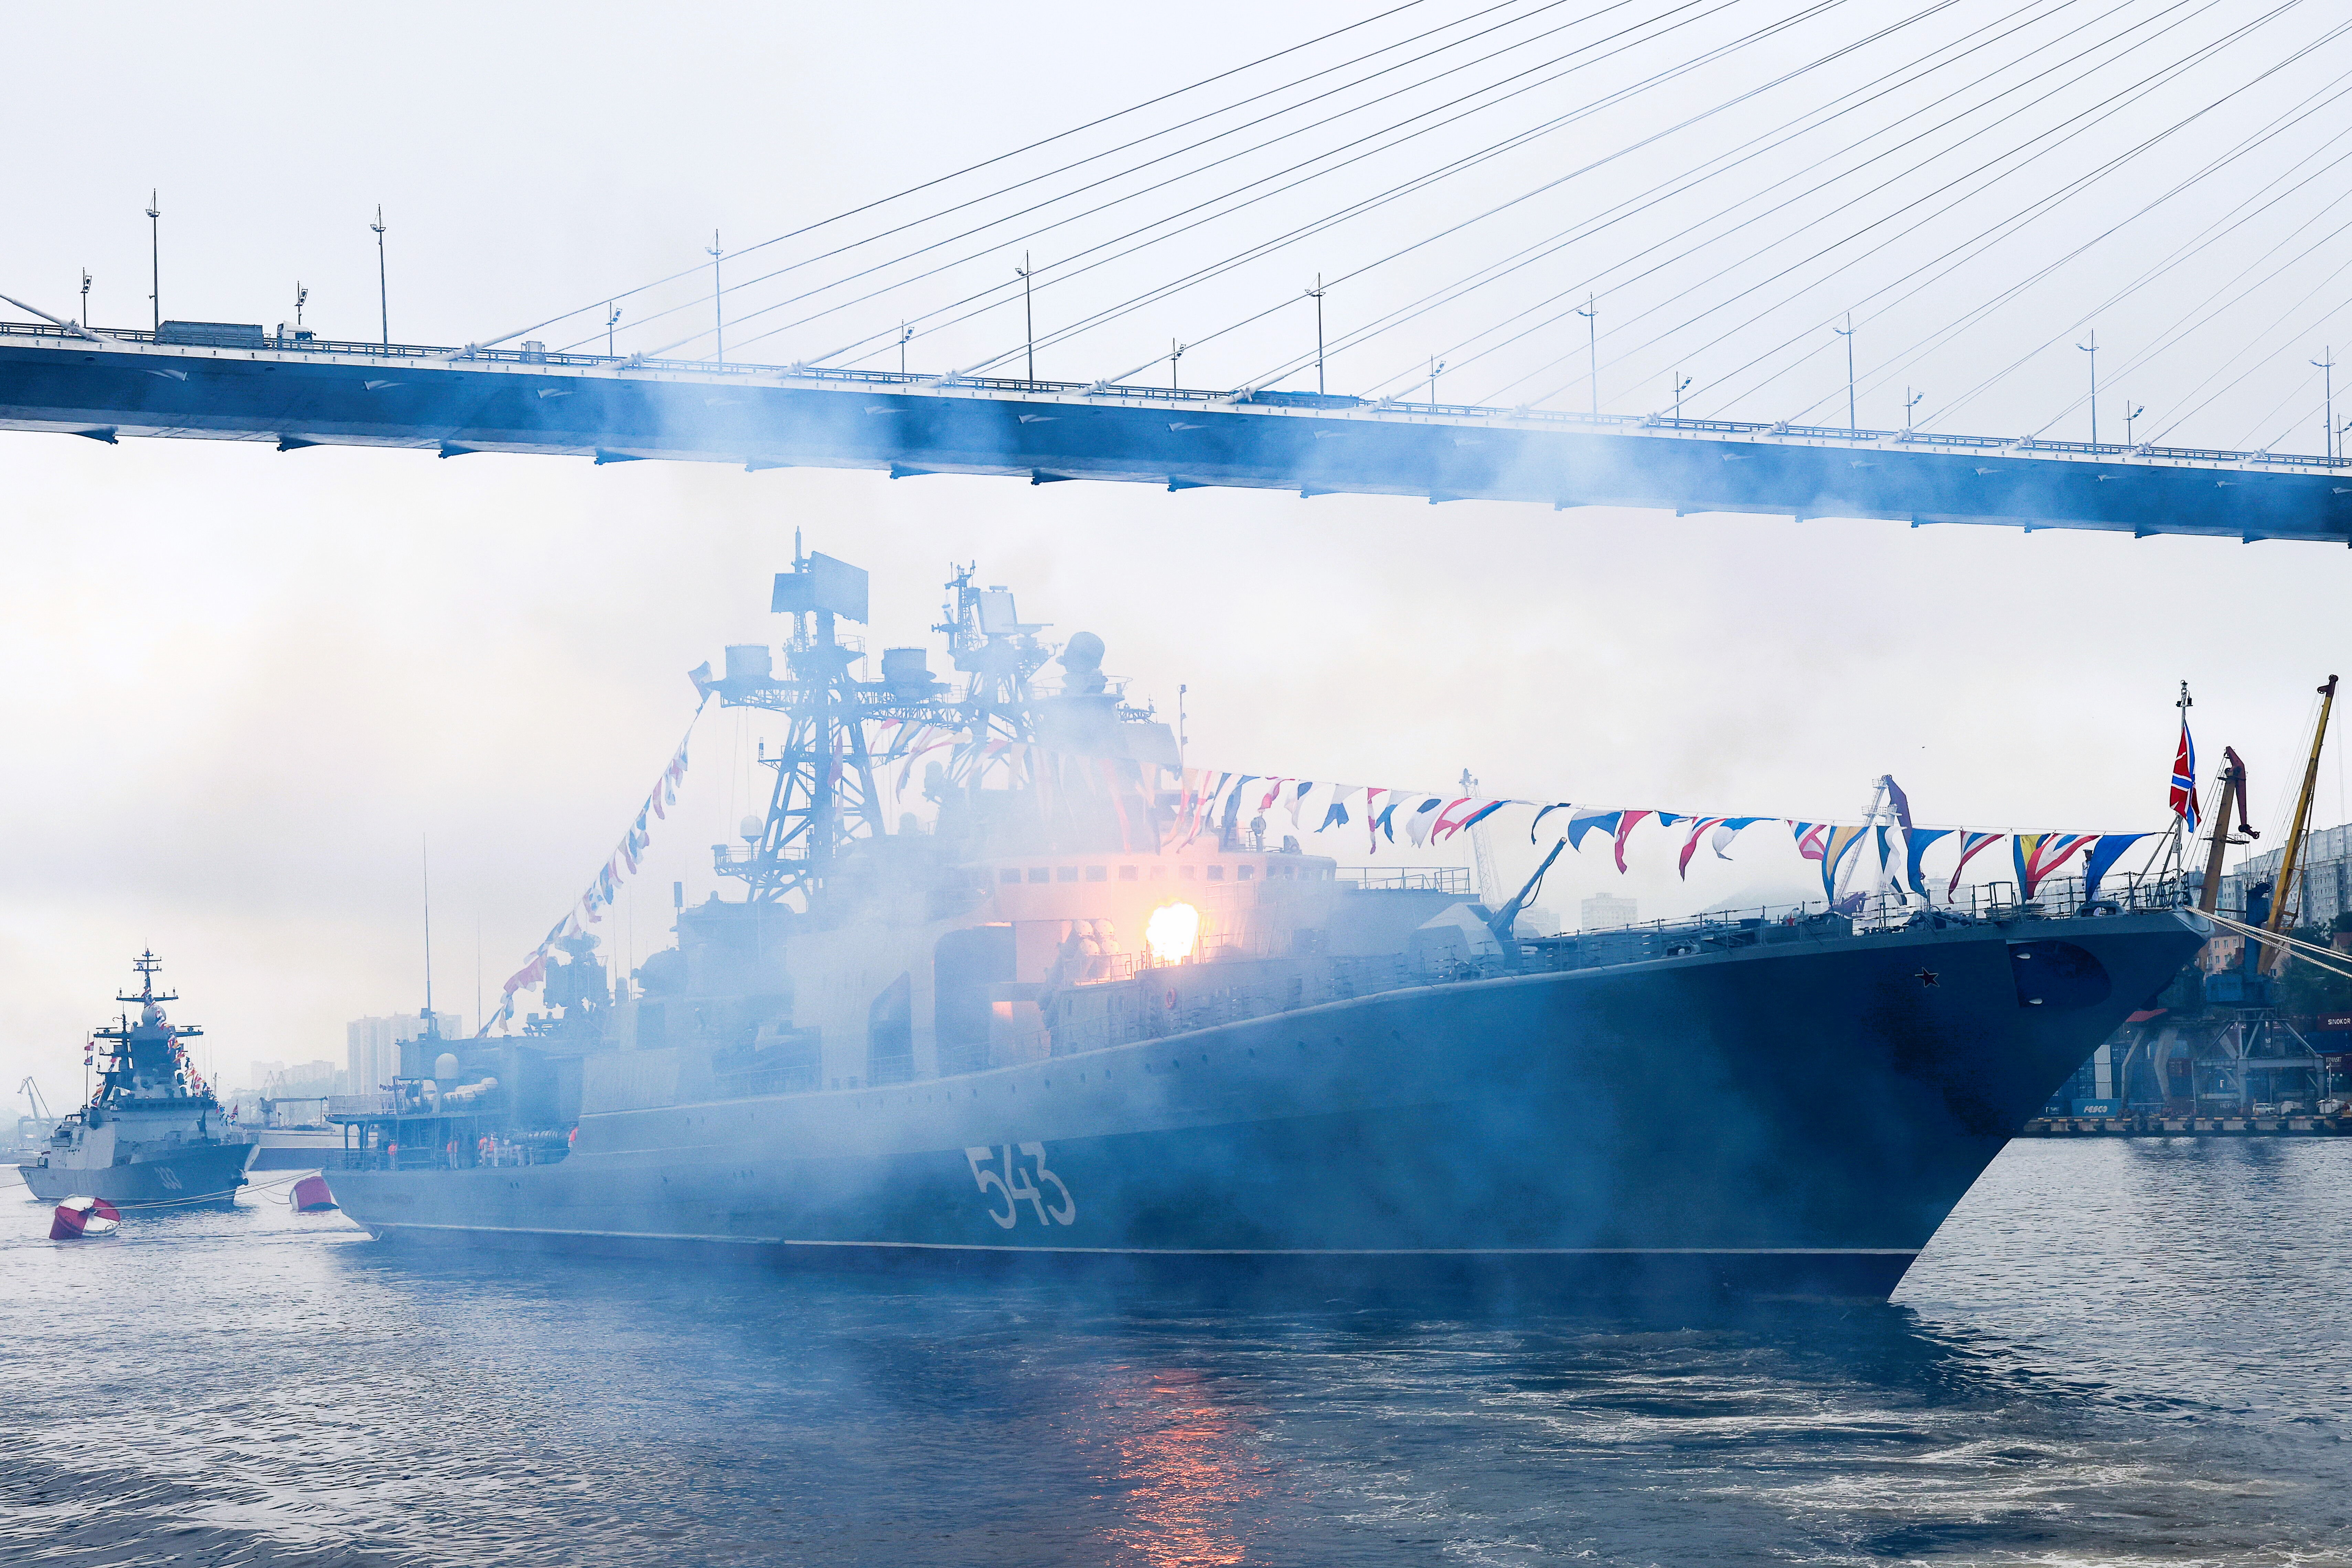 EILMELDUNG - Russische Kriegsschiffe ausgelaufen - Putins Marine läuft Richtung Schwarzes Meer! Was plant der Kreml?